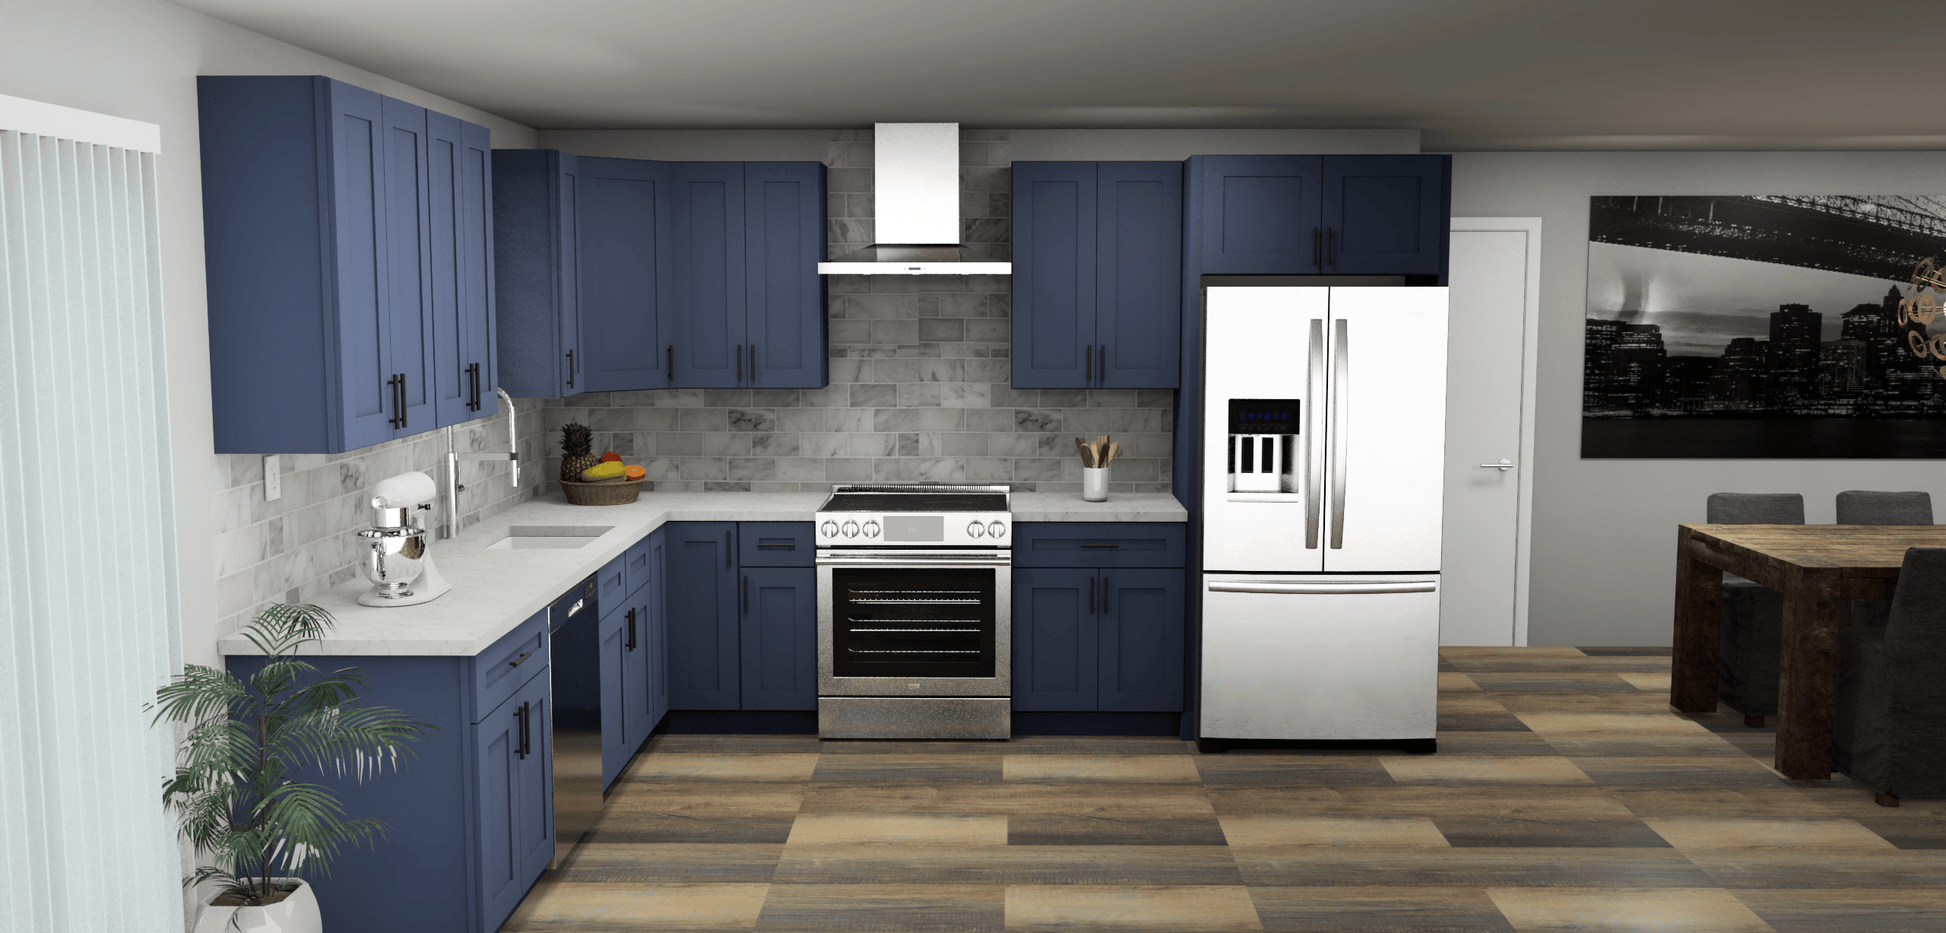 LessCare Danbury Blue 10 x 12 L Shaped Kitchen Front Layout Photo